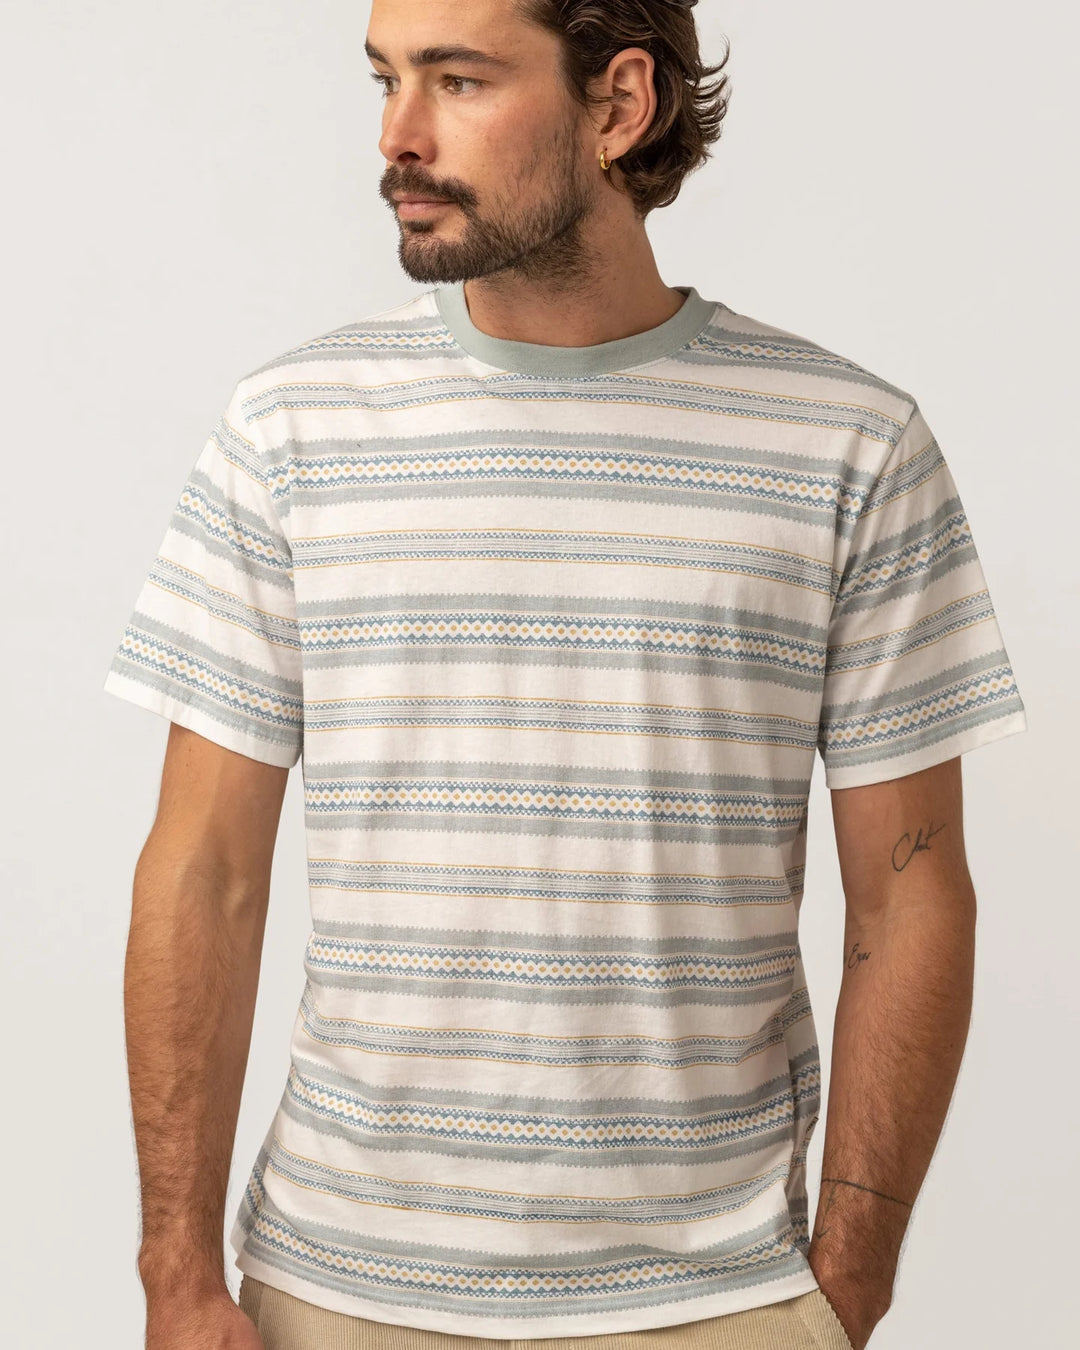 Rhythm Cairo Stripe Vintage Short Sleeve T-Shirt